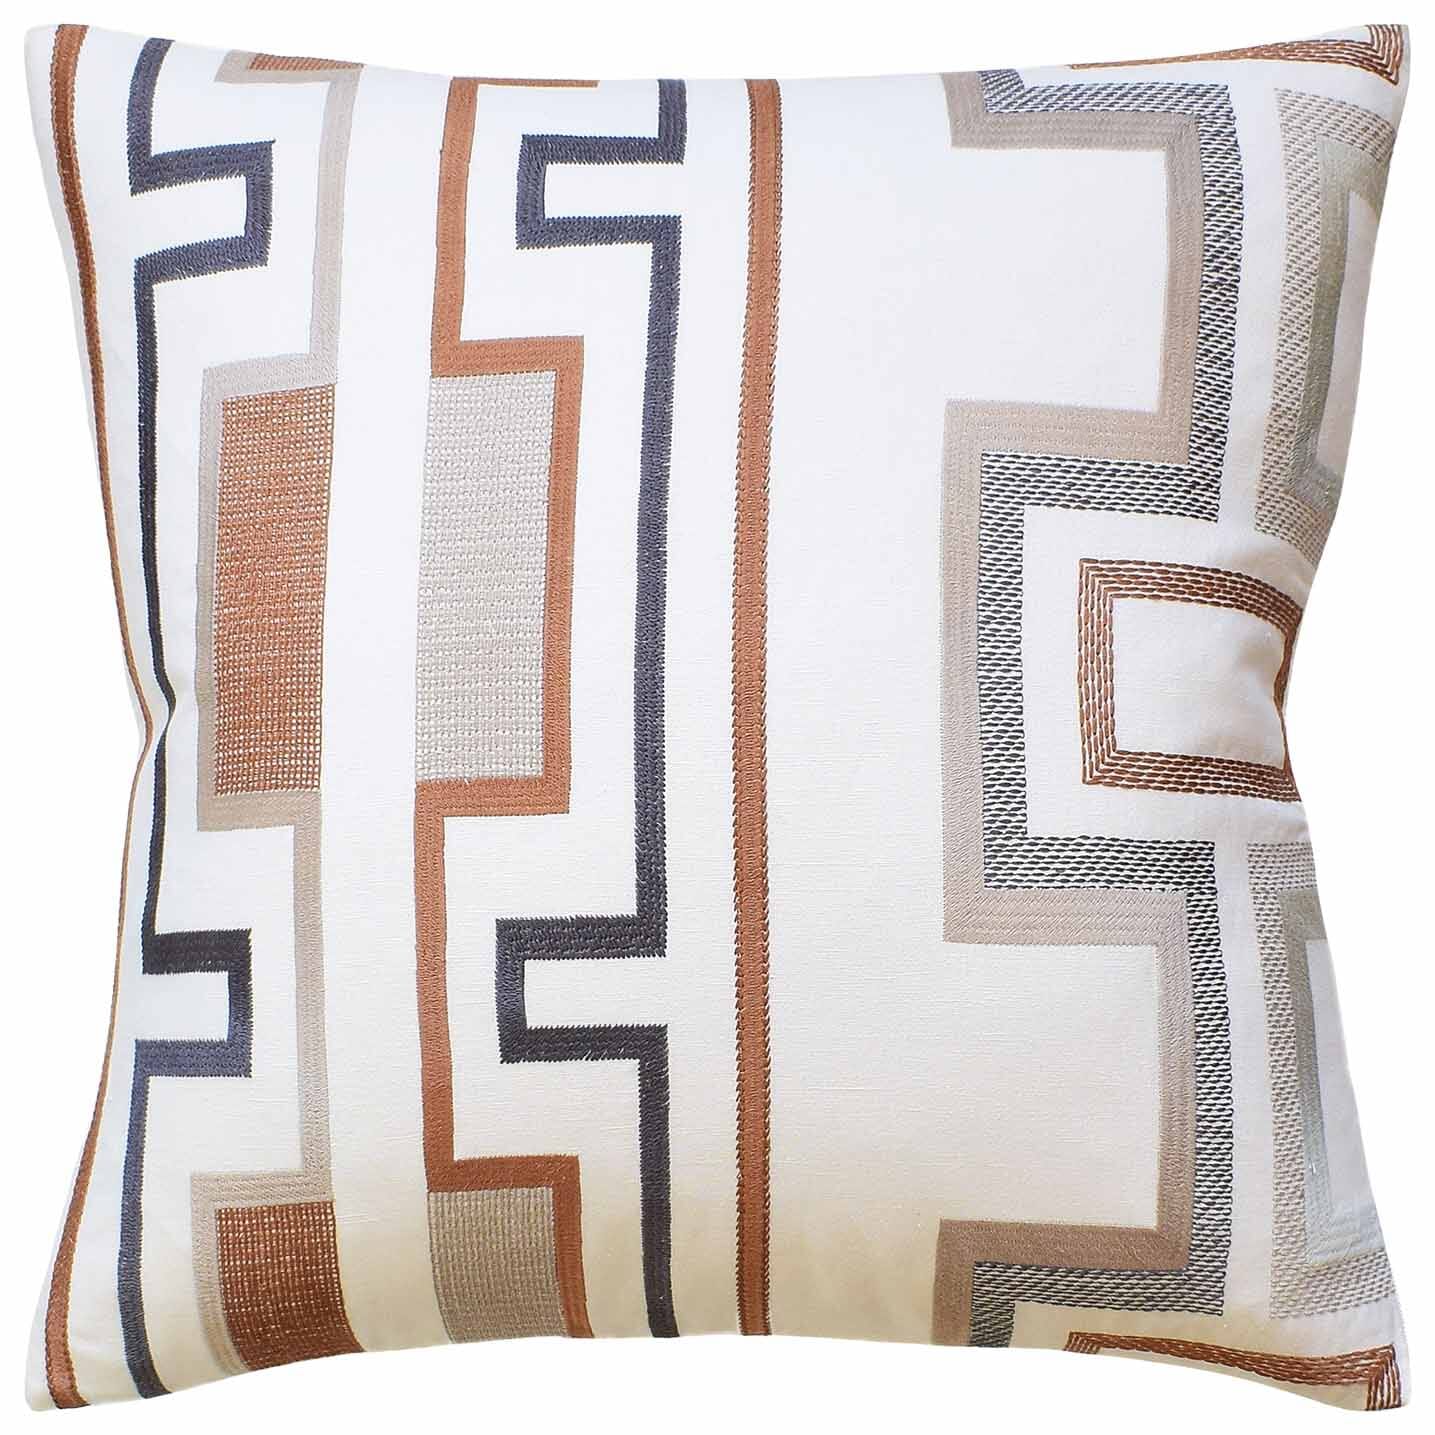 Tritone Embroidery Copper Decorative Pillow - Ryan Studio Pillow - Lee Jofa Fabric